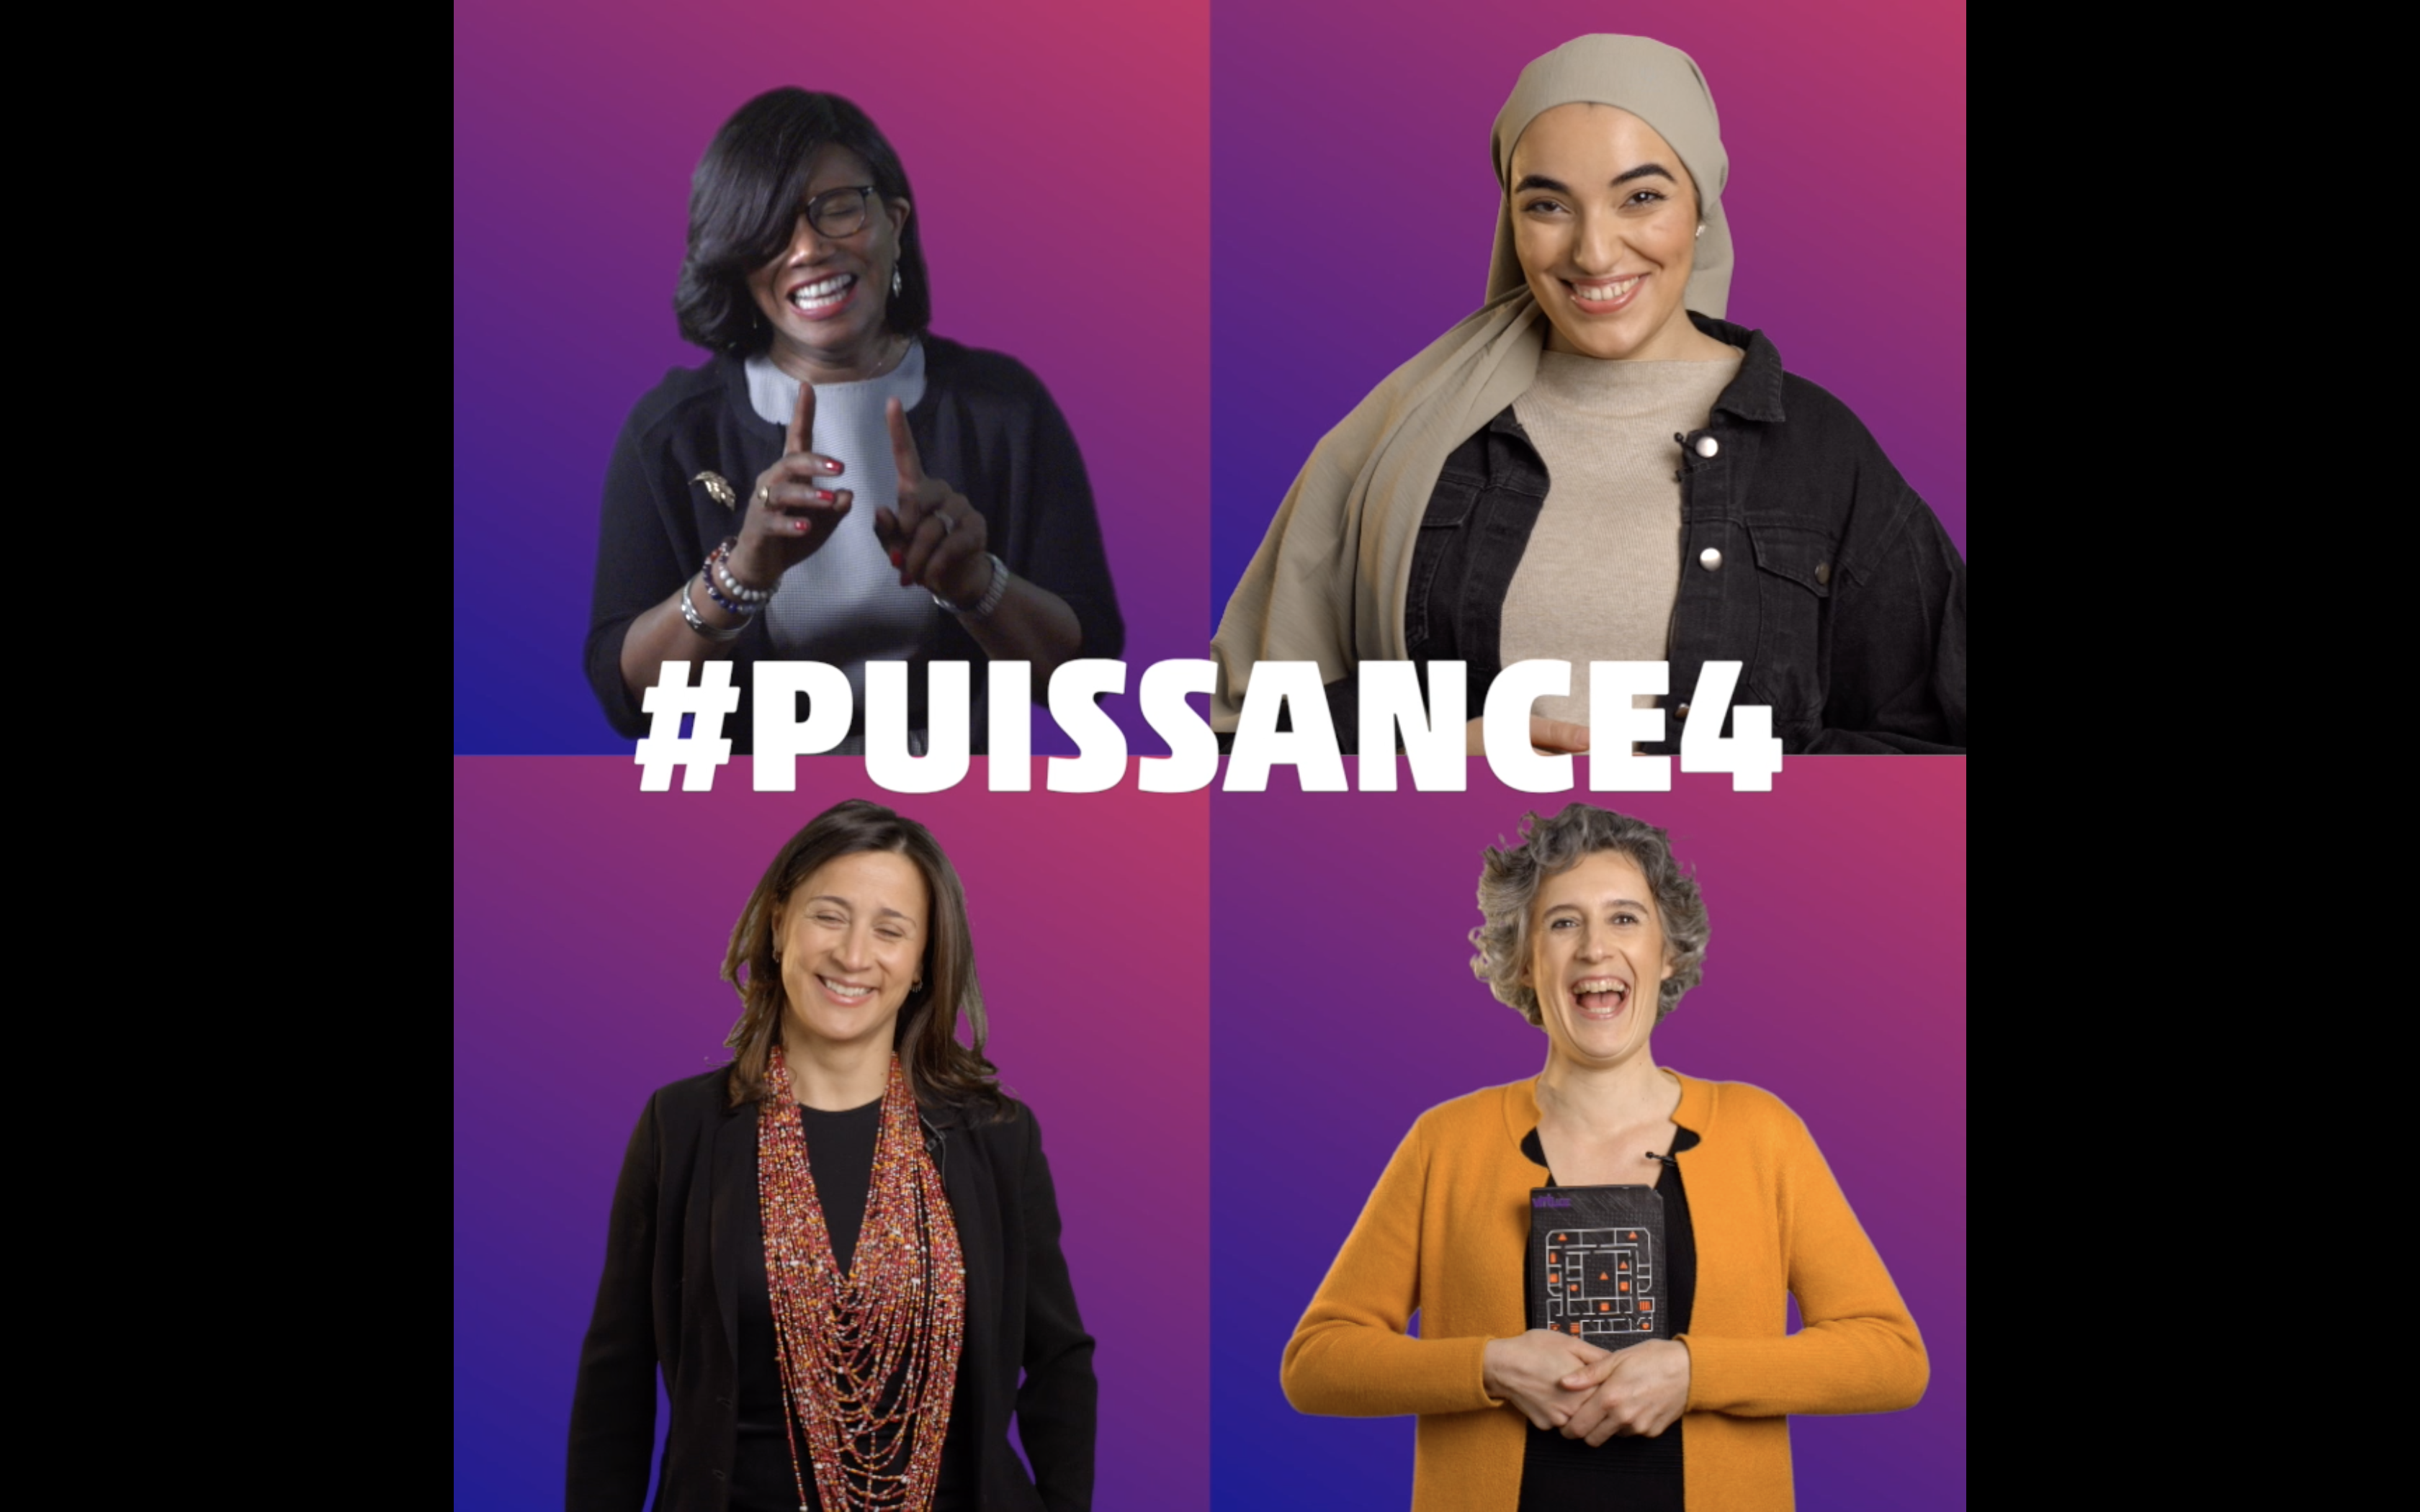 #Puissance4 : Elisabeth Moreno, Imane Bounouh, Estelle Assaf, Céline Favy-Huin et le numérique